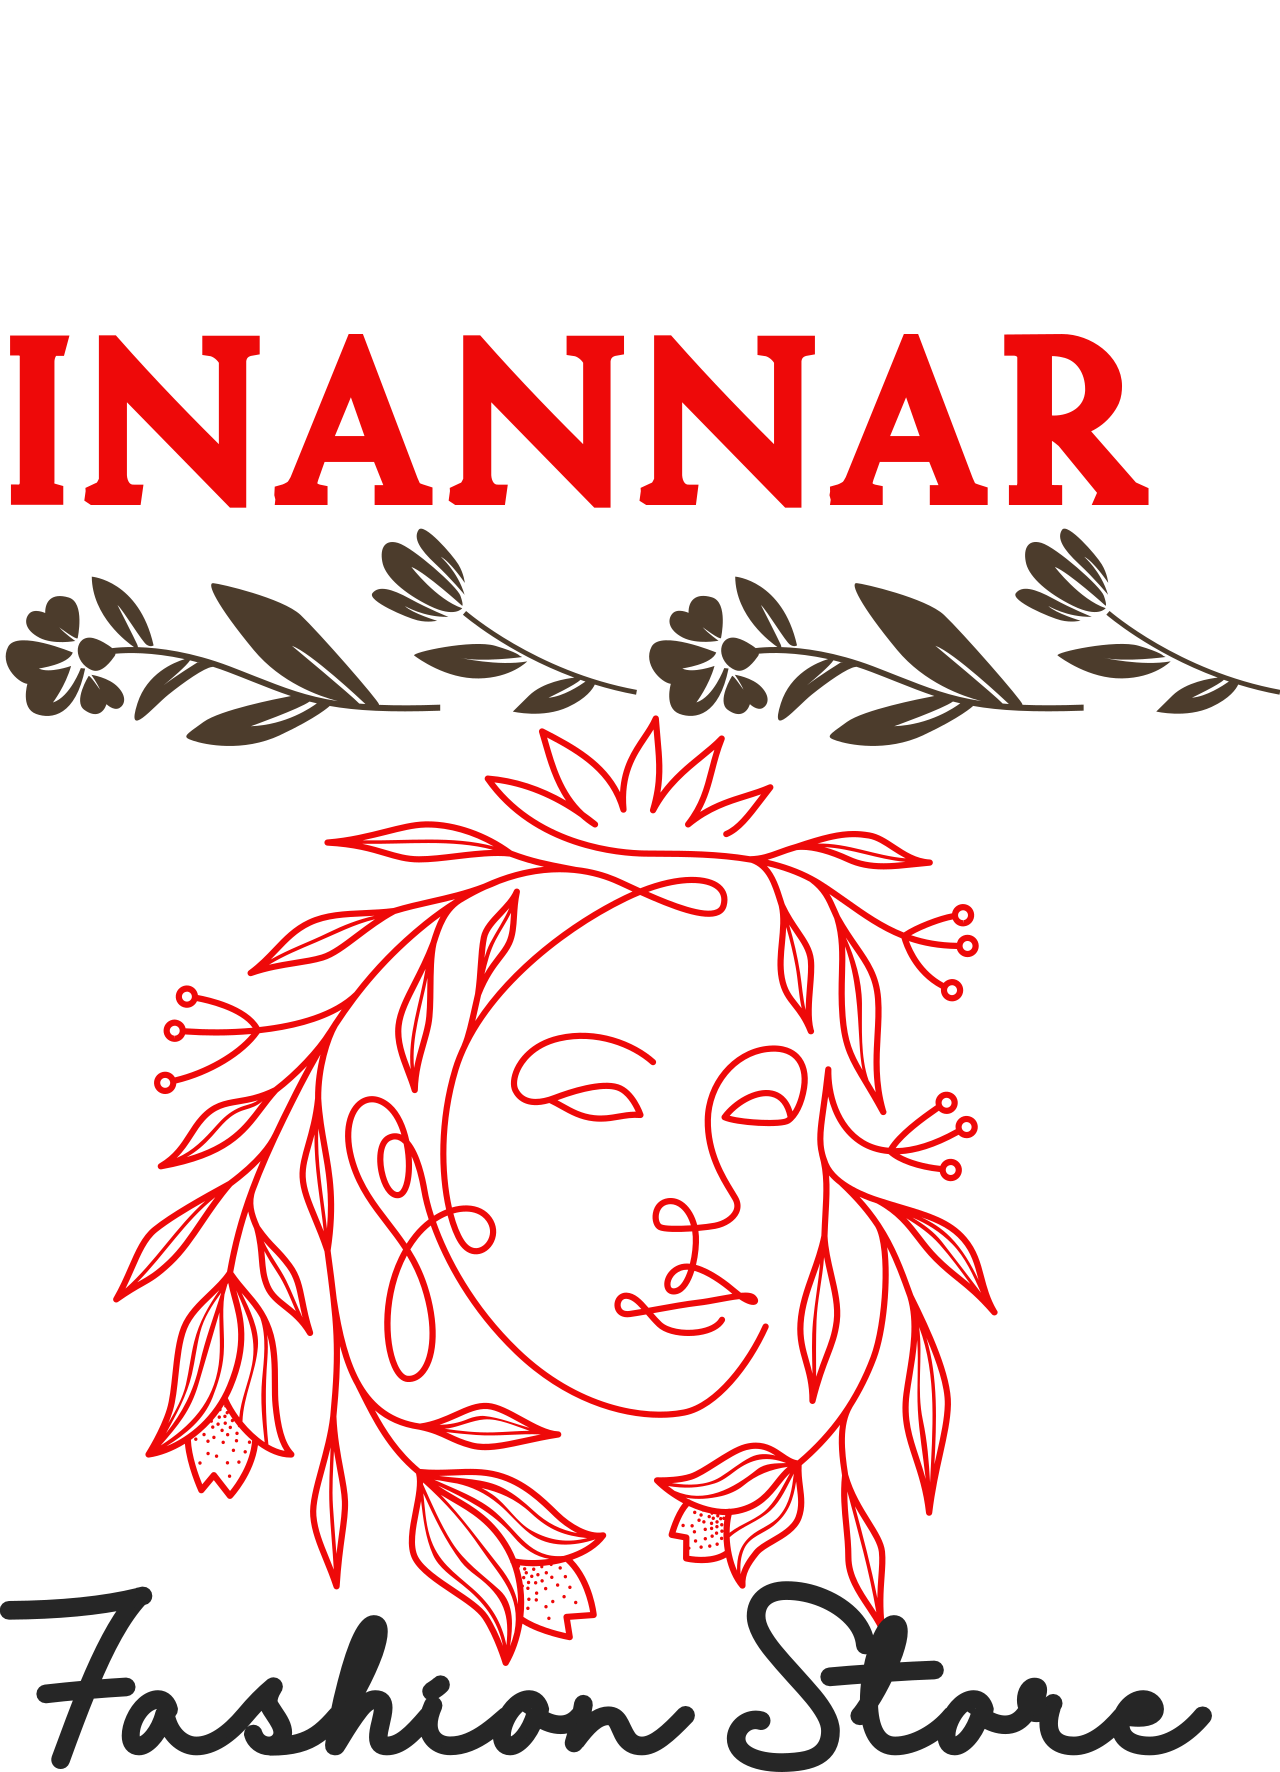 Inannar's web page